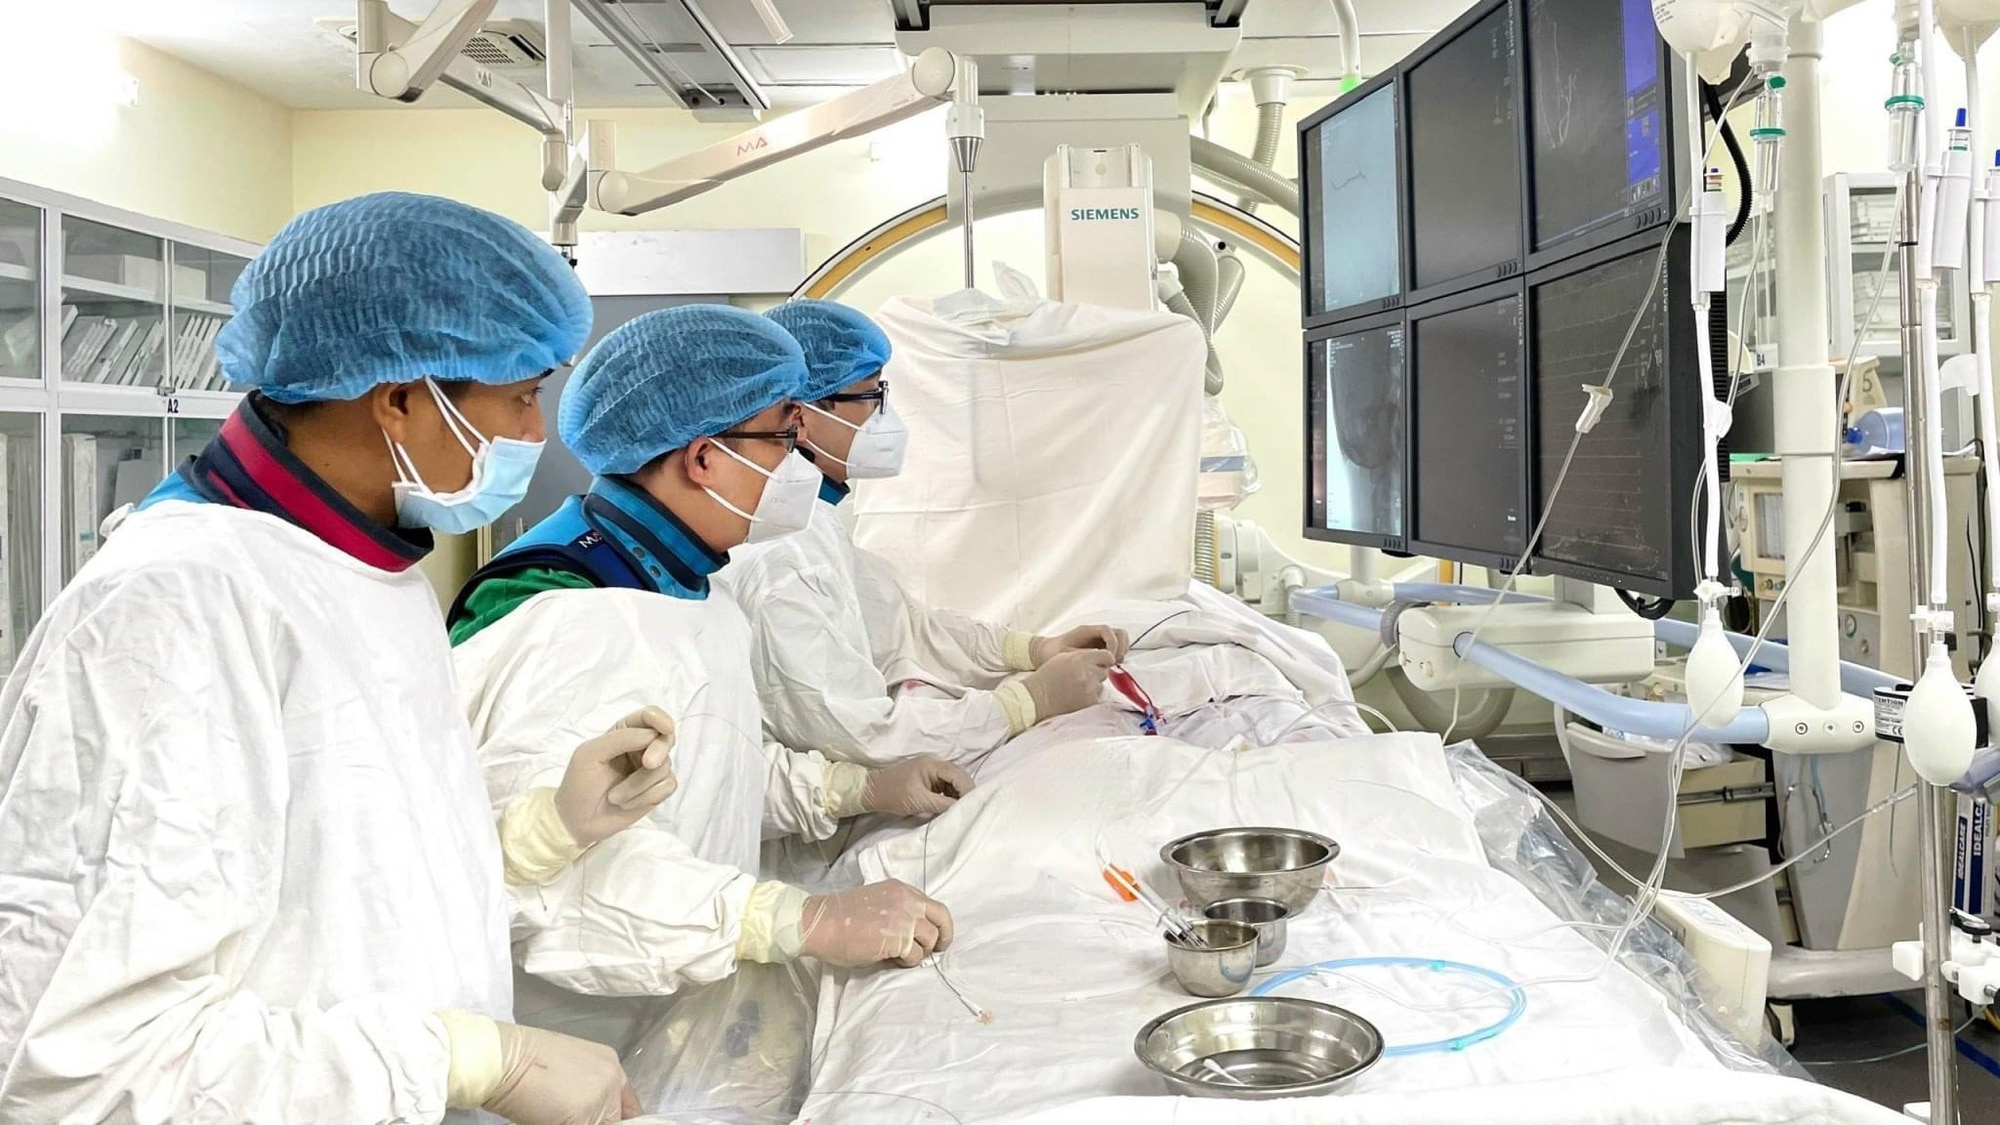 Gần 1 tiếng đồng hồ, ê kíp bác sĩ Bệnh viện Quân y 175 (TP.HCM) đã cứu sống bệnh nhân 35 tuổi bị đột quỵ nguy kịch sau giác hơi - Ảnh: Bệnh viện cung cấp